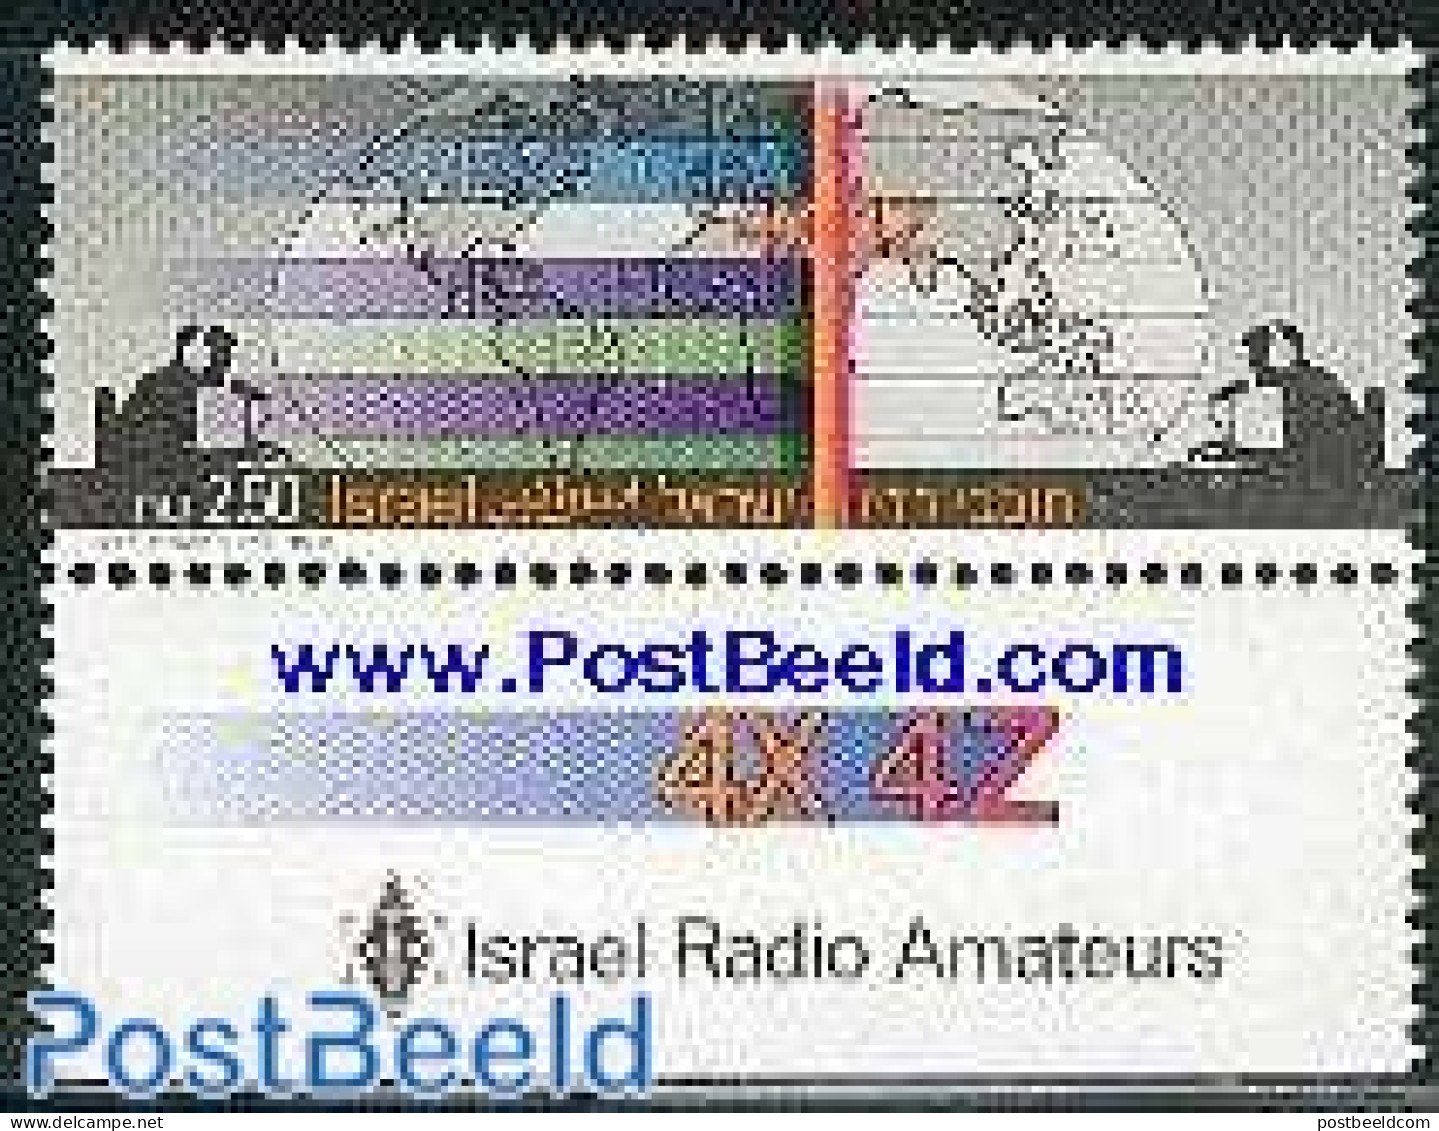 Israel 1987 Radio Amateurs 1v, Mint NH, Performance Art - Radio And Television - Ongebruikt (met Tabs)